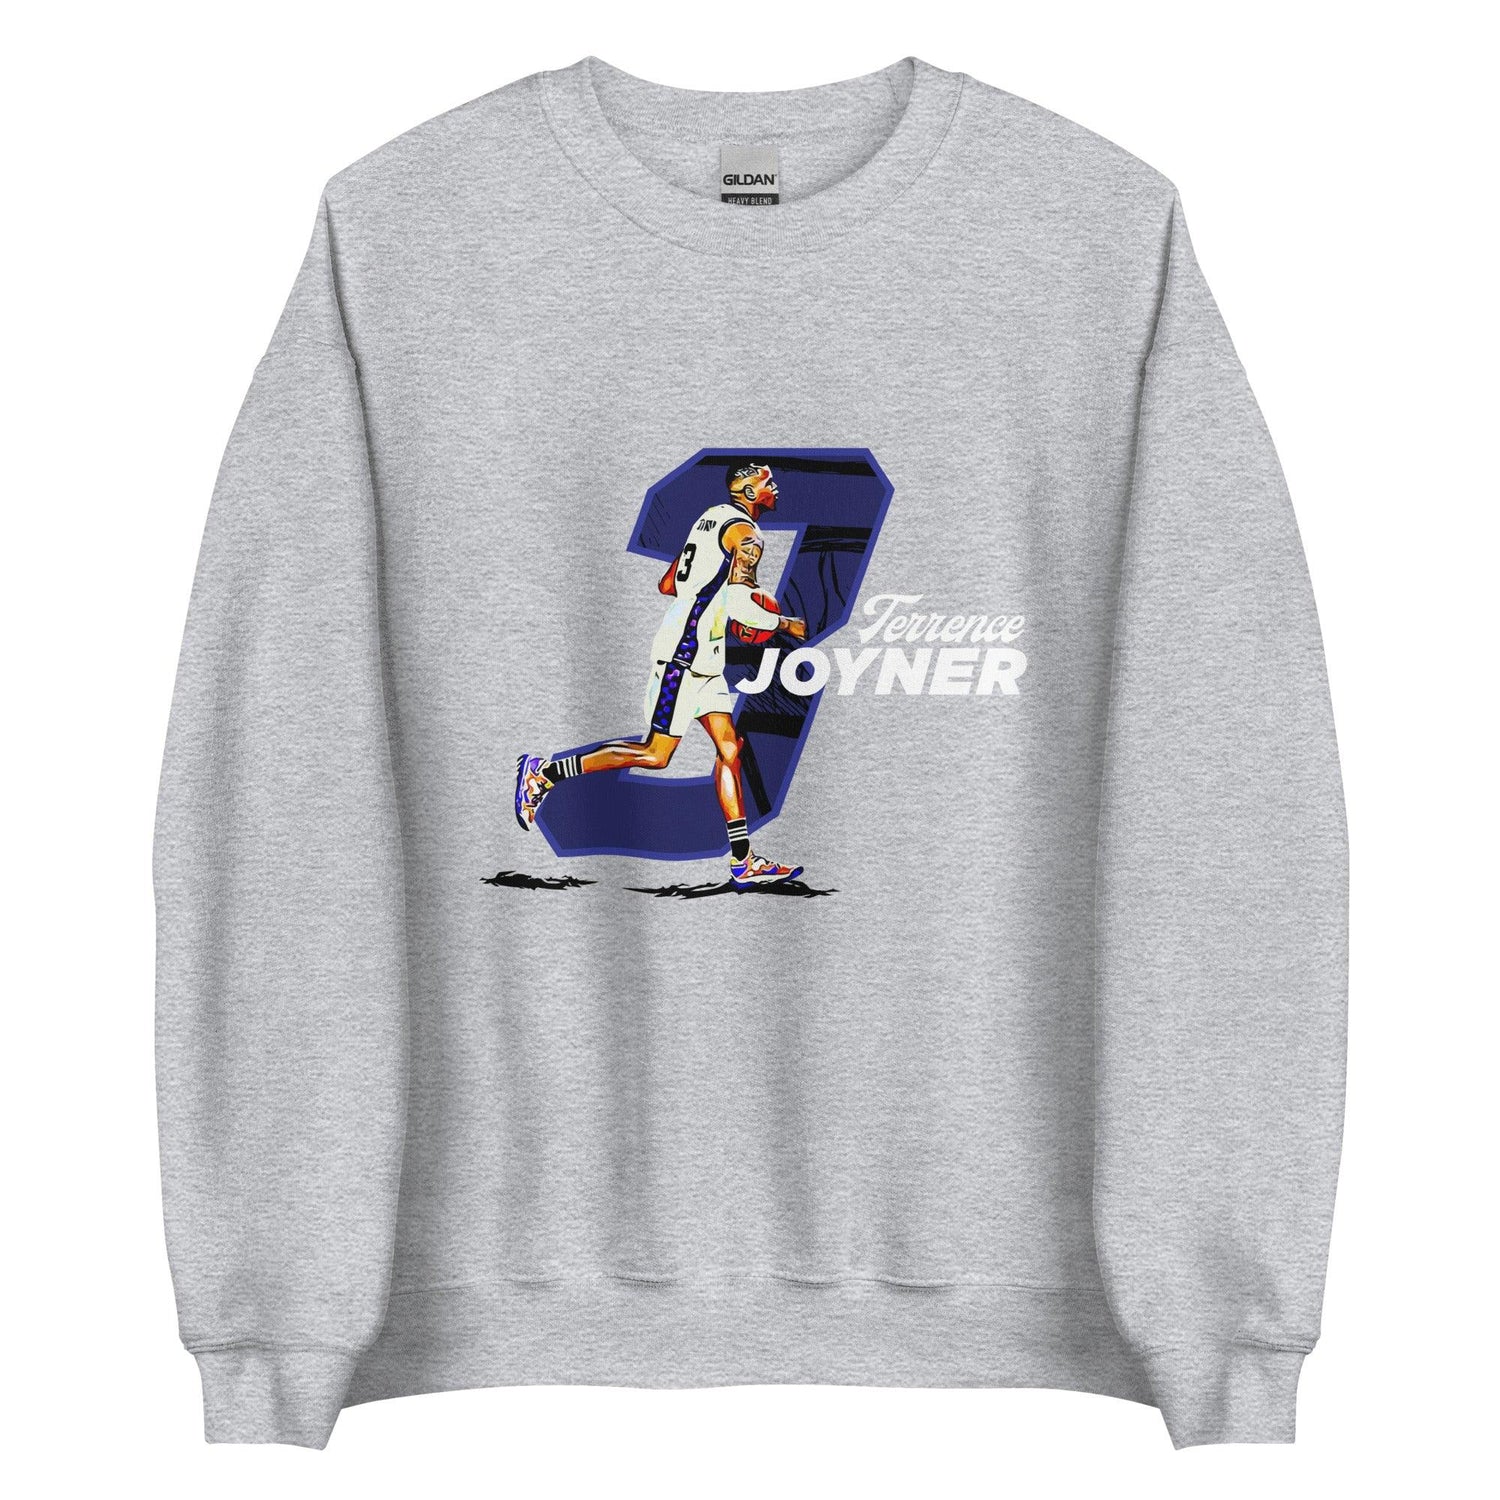 Terrence Joyner "3" Sweatshirt - Fan Arch